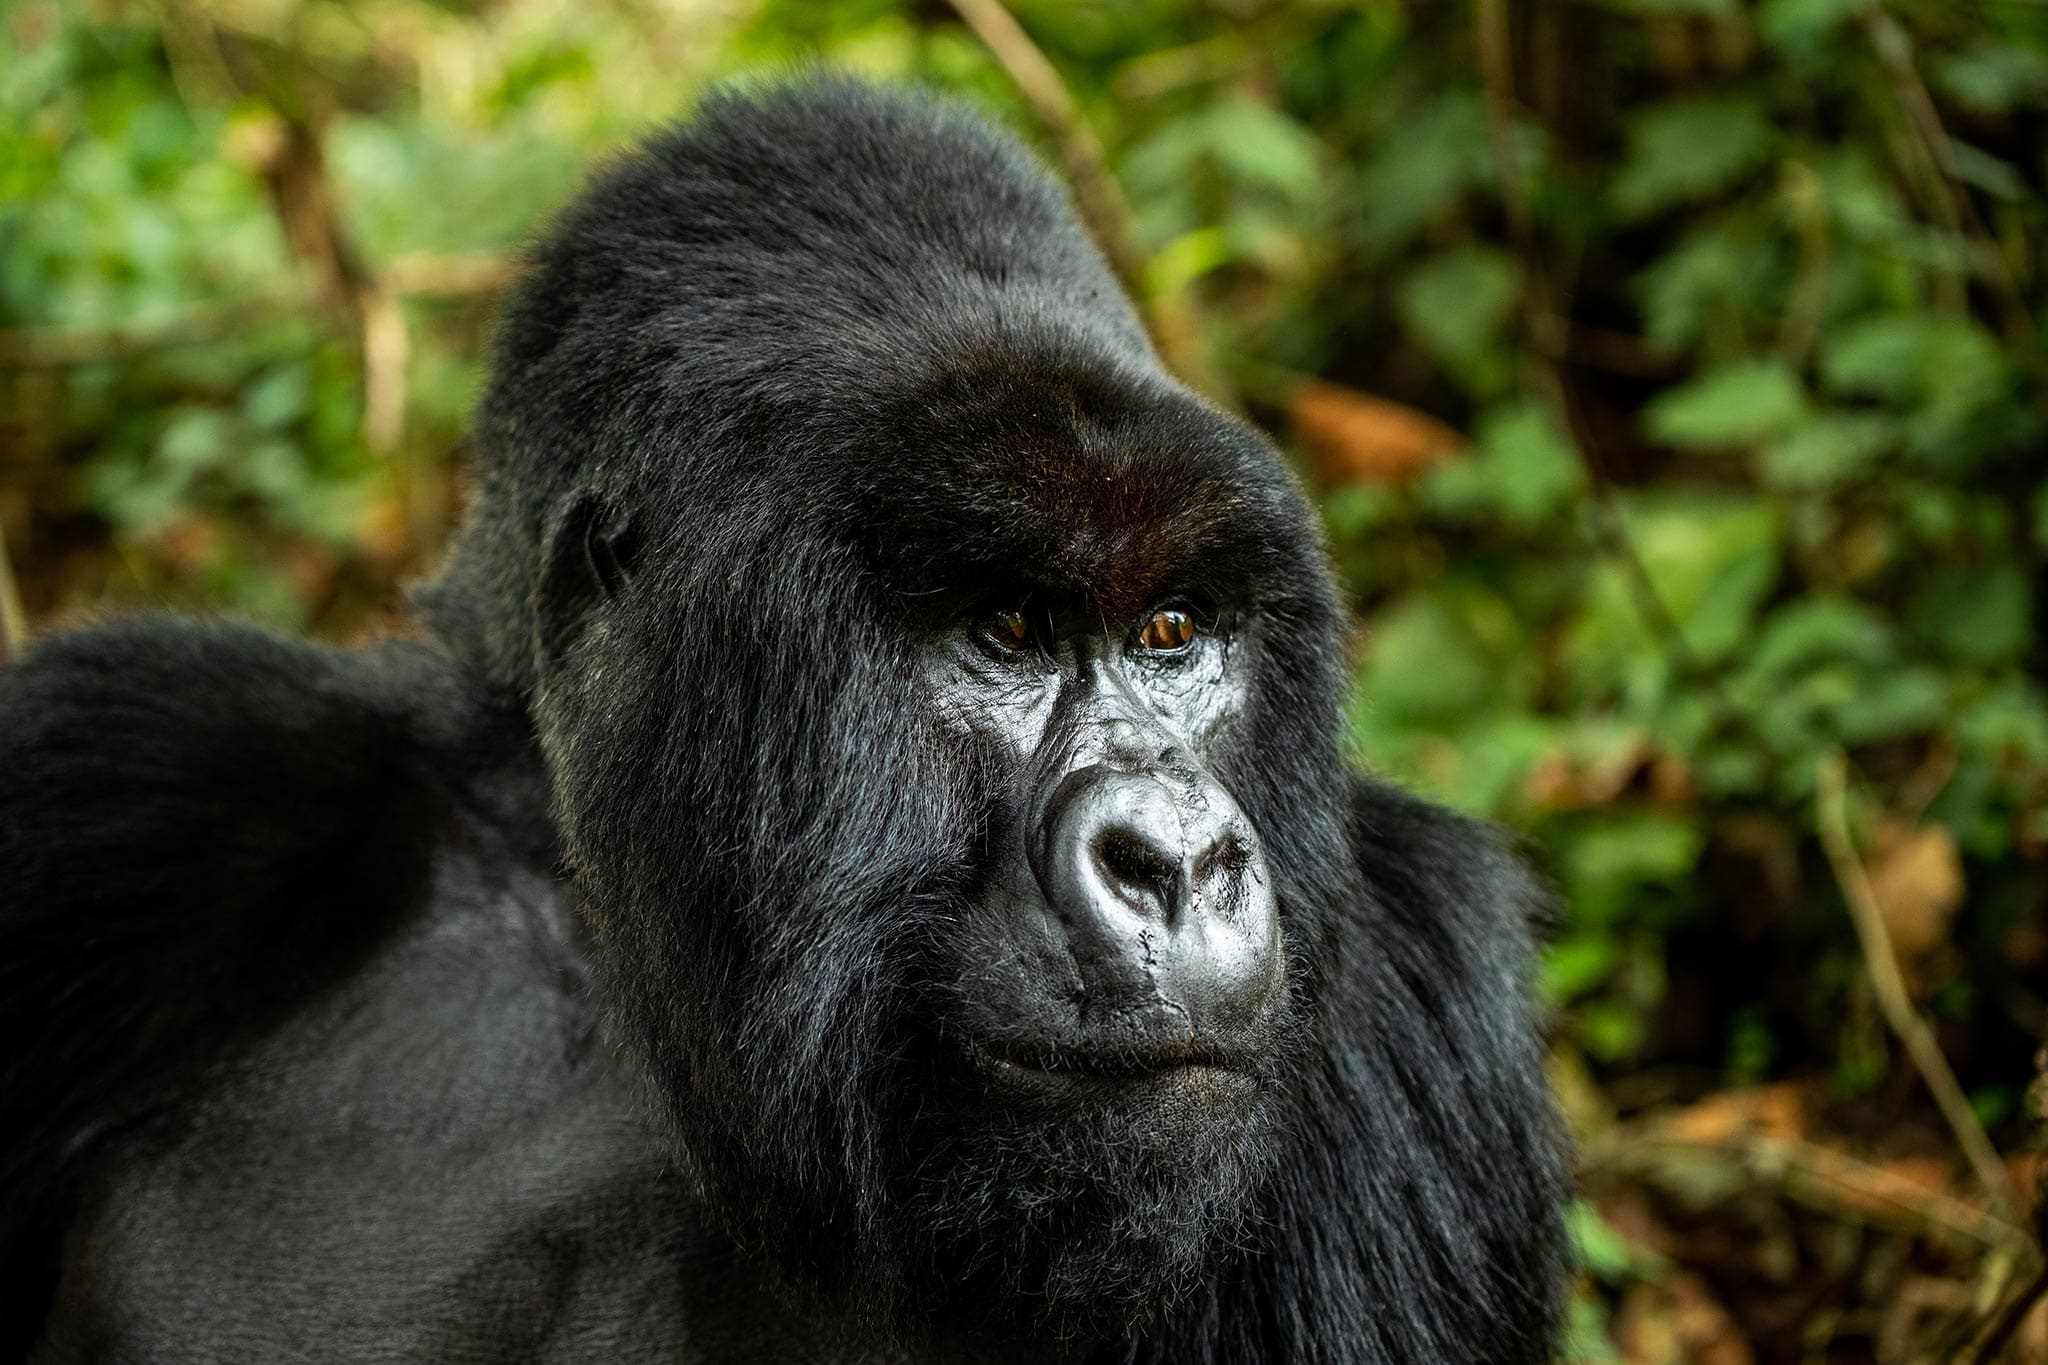 Male adult gorilla